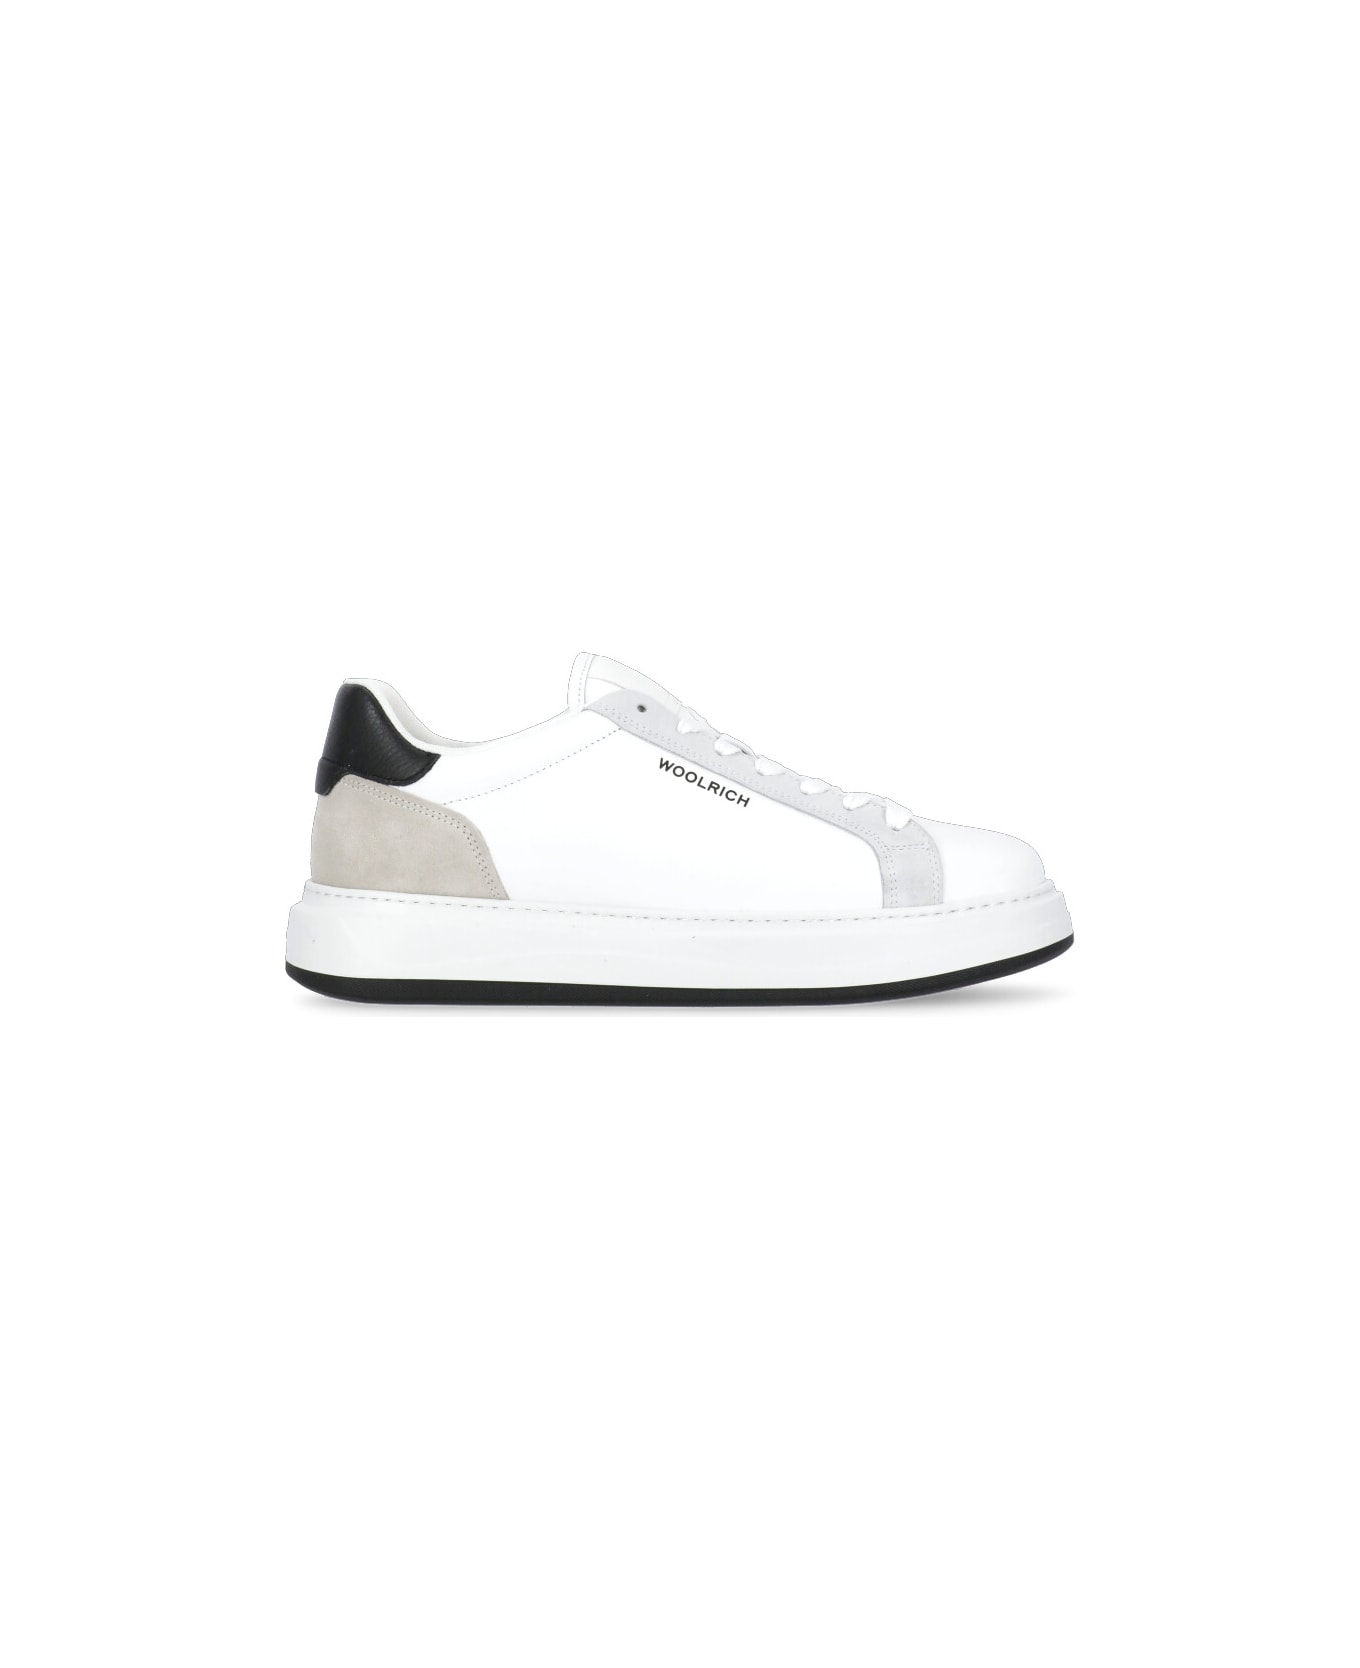 Woolrich Arrow Sneakers - White